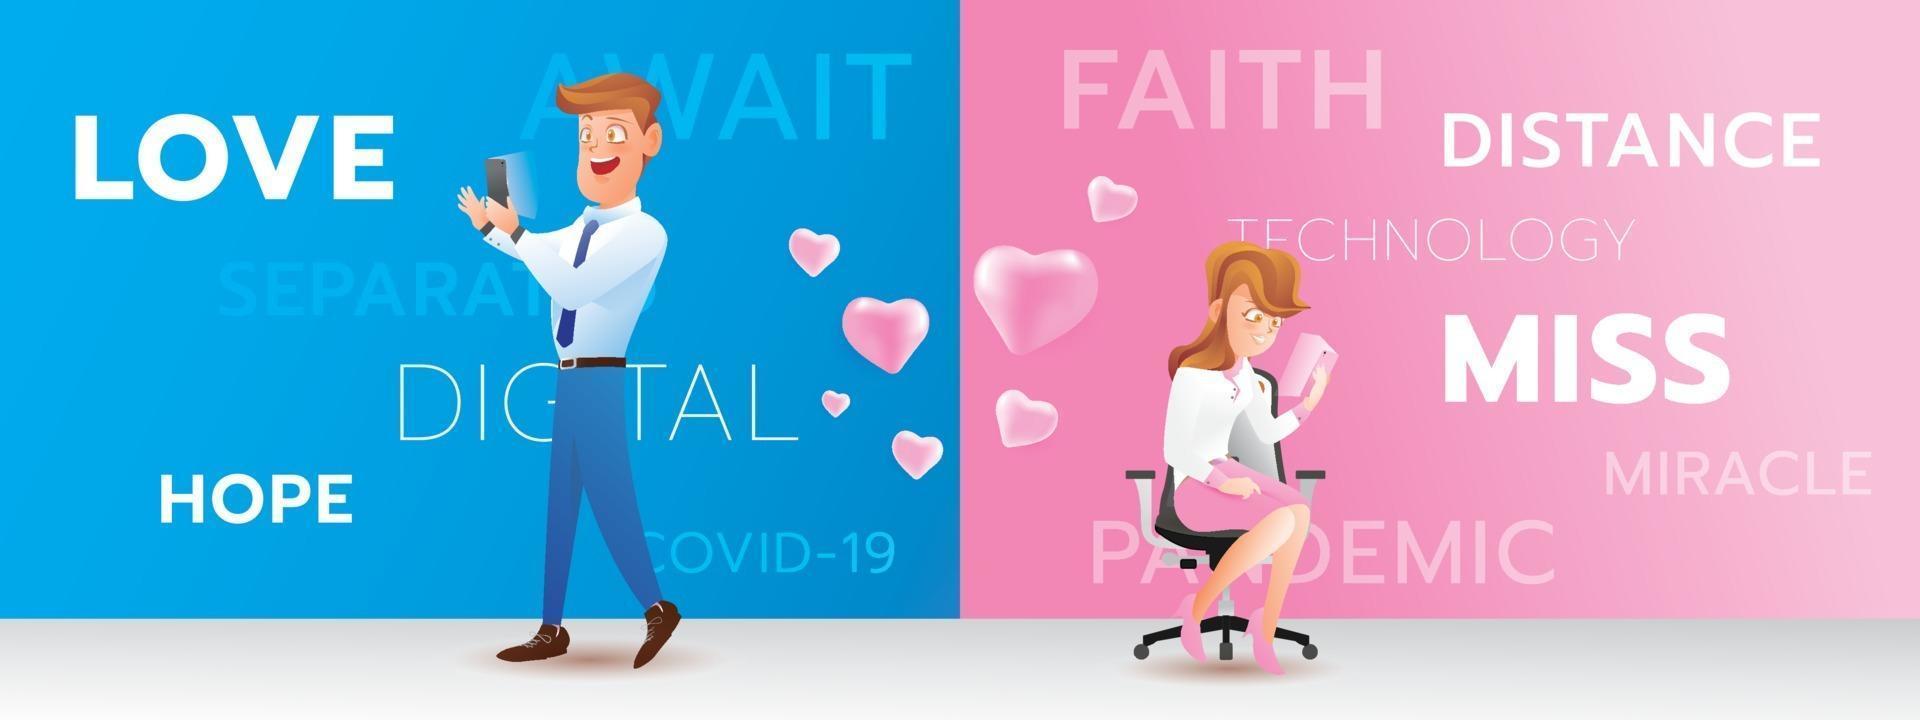 Contacto de dibujos animados de pareja con emoción de amor, la tecnología digital puede ayudar a las personas vector